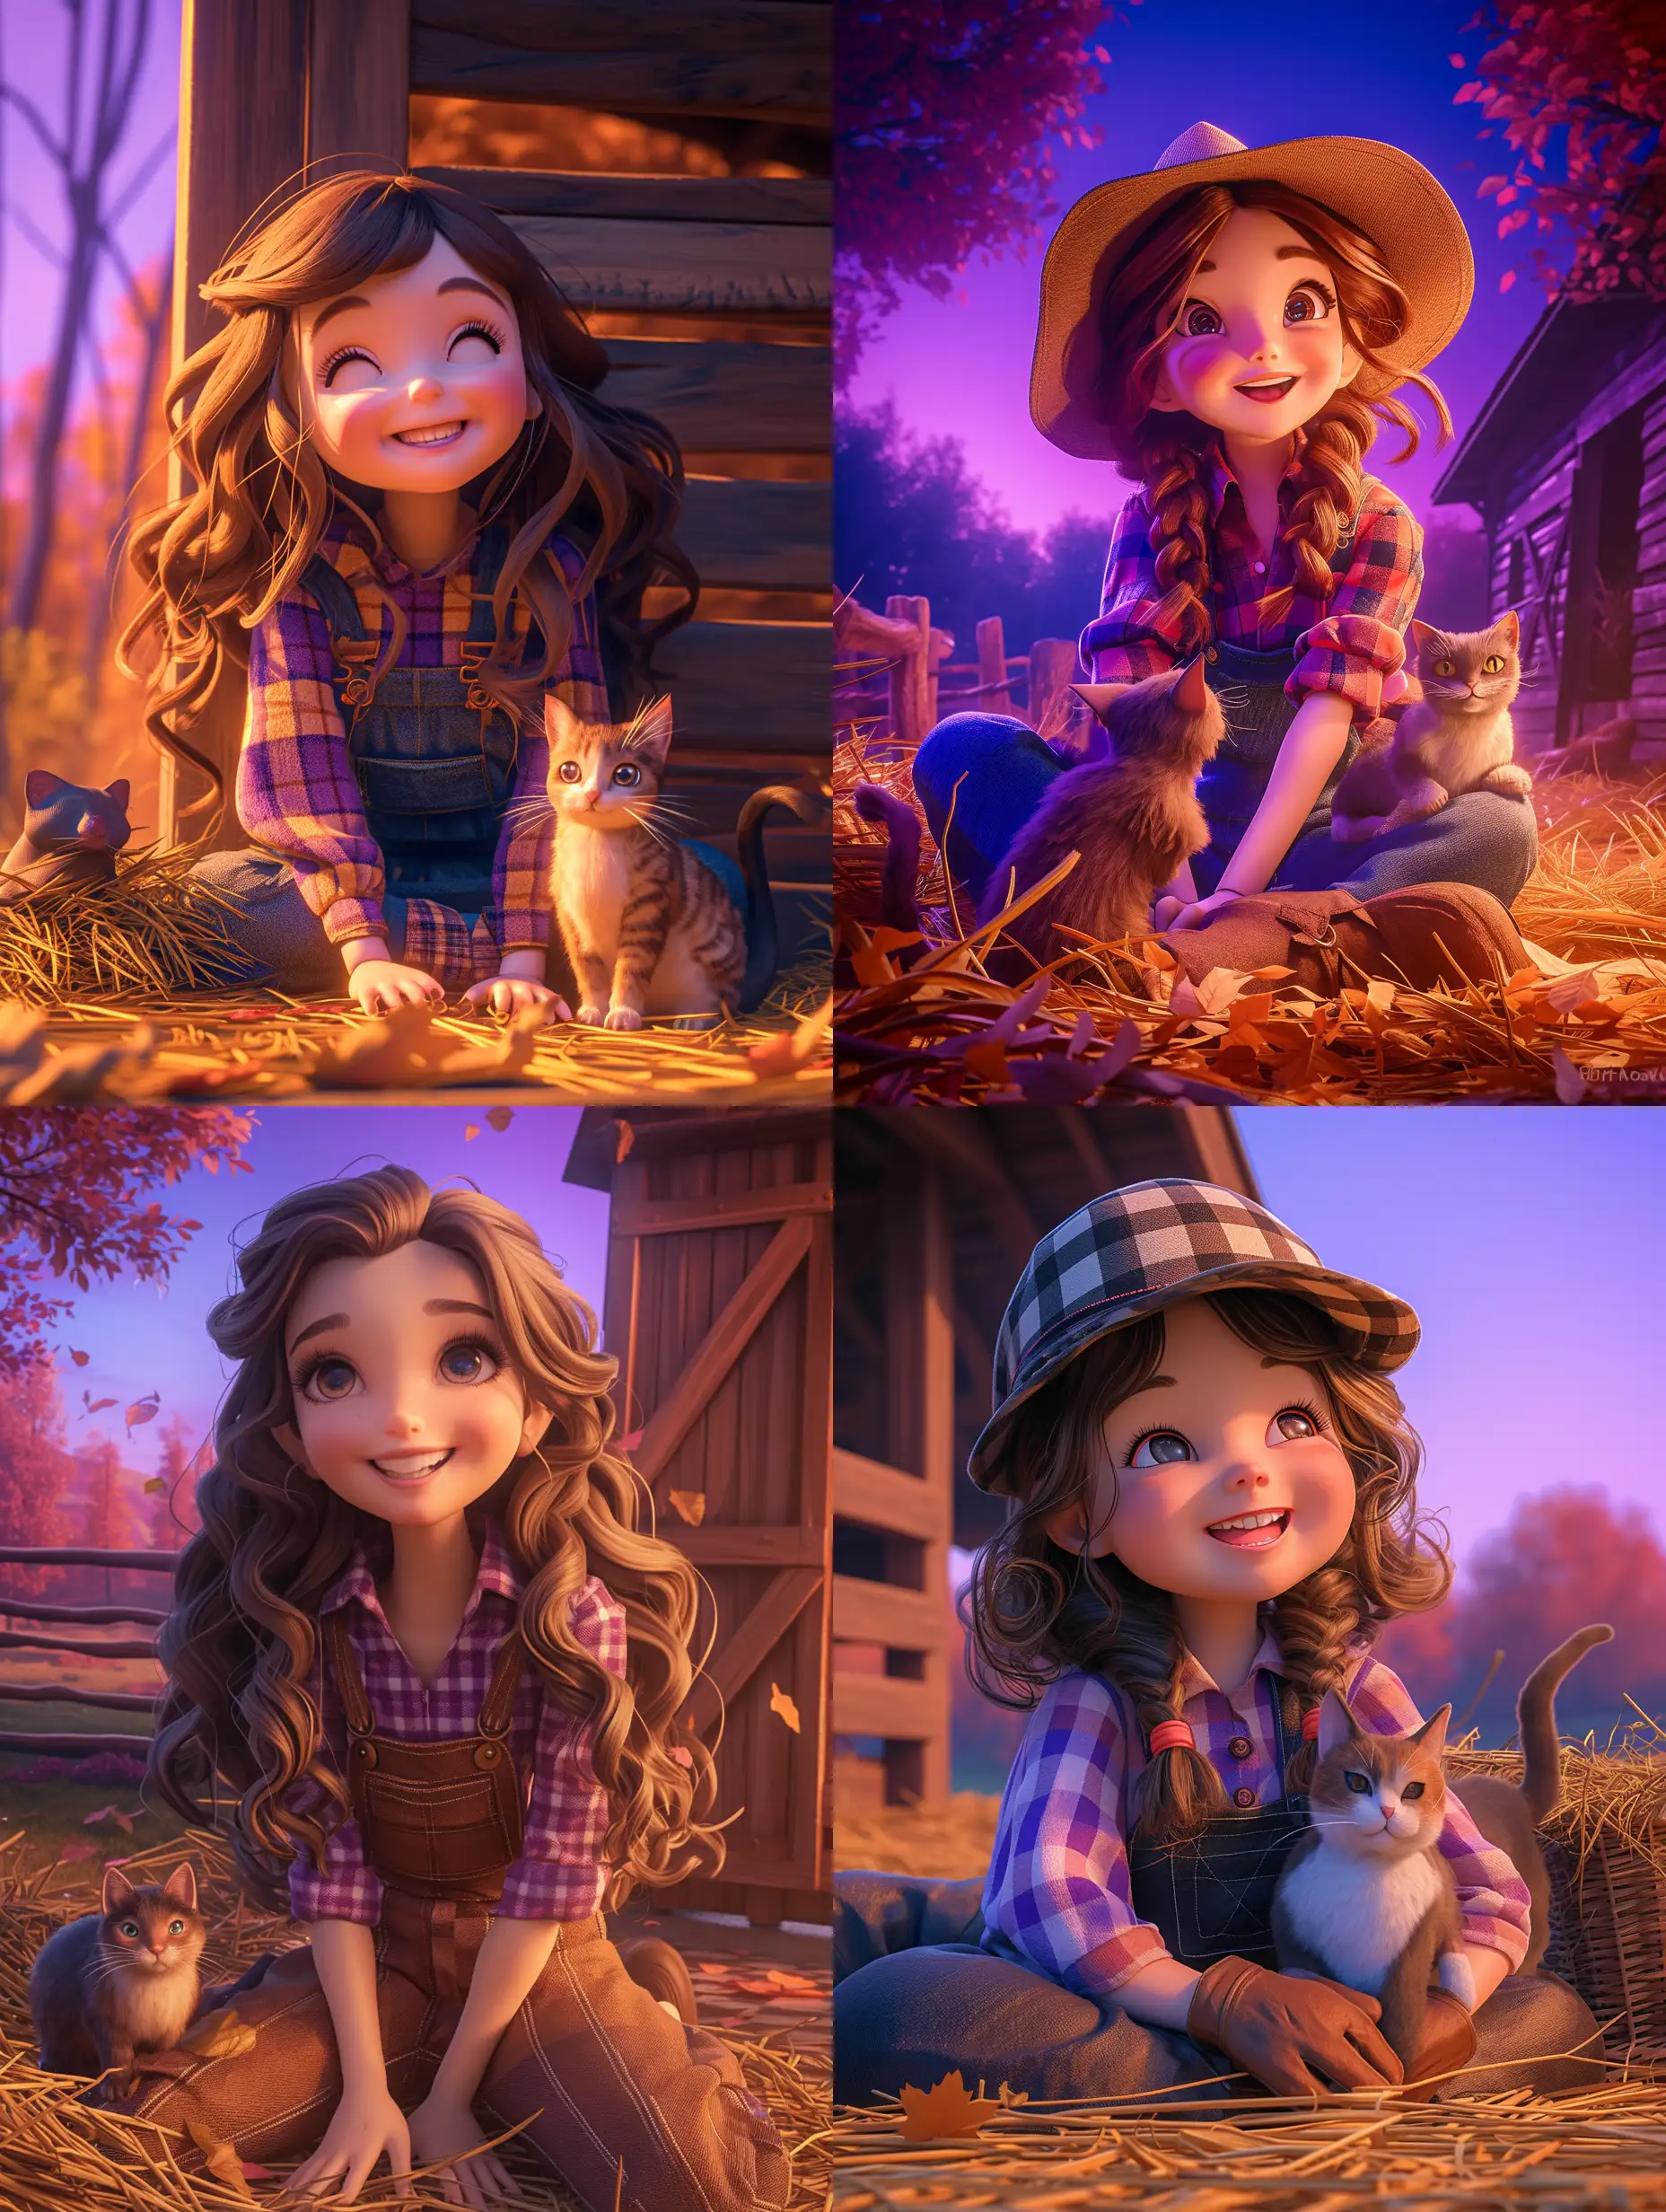 Joyful-Autumn-Scene-Little-Brunette-Farmer-Girl-with-Cat-in-Barn